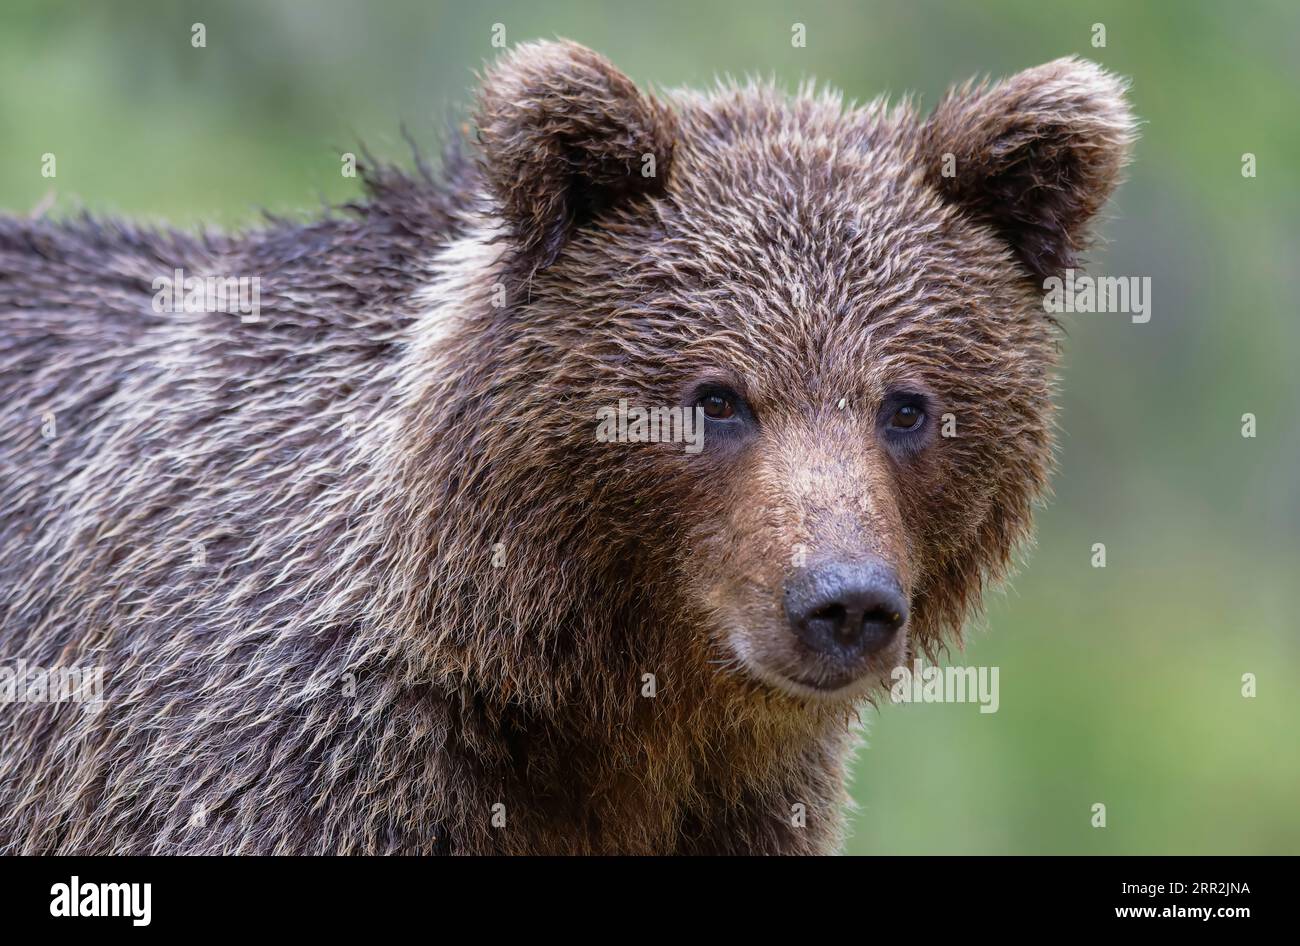 Unione l'orso bruno (Ursus arctos) passeggiate lungo il lago nella taiga Karelien, Finlandia e Scandinavia Foto Stock